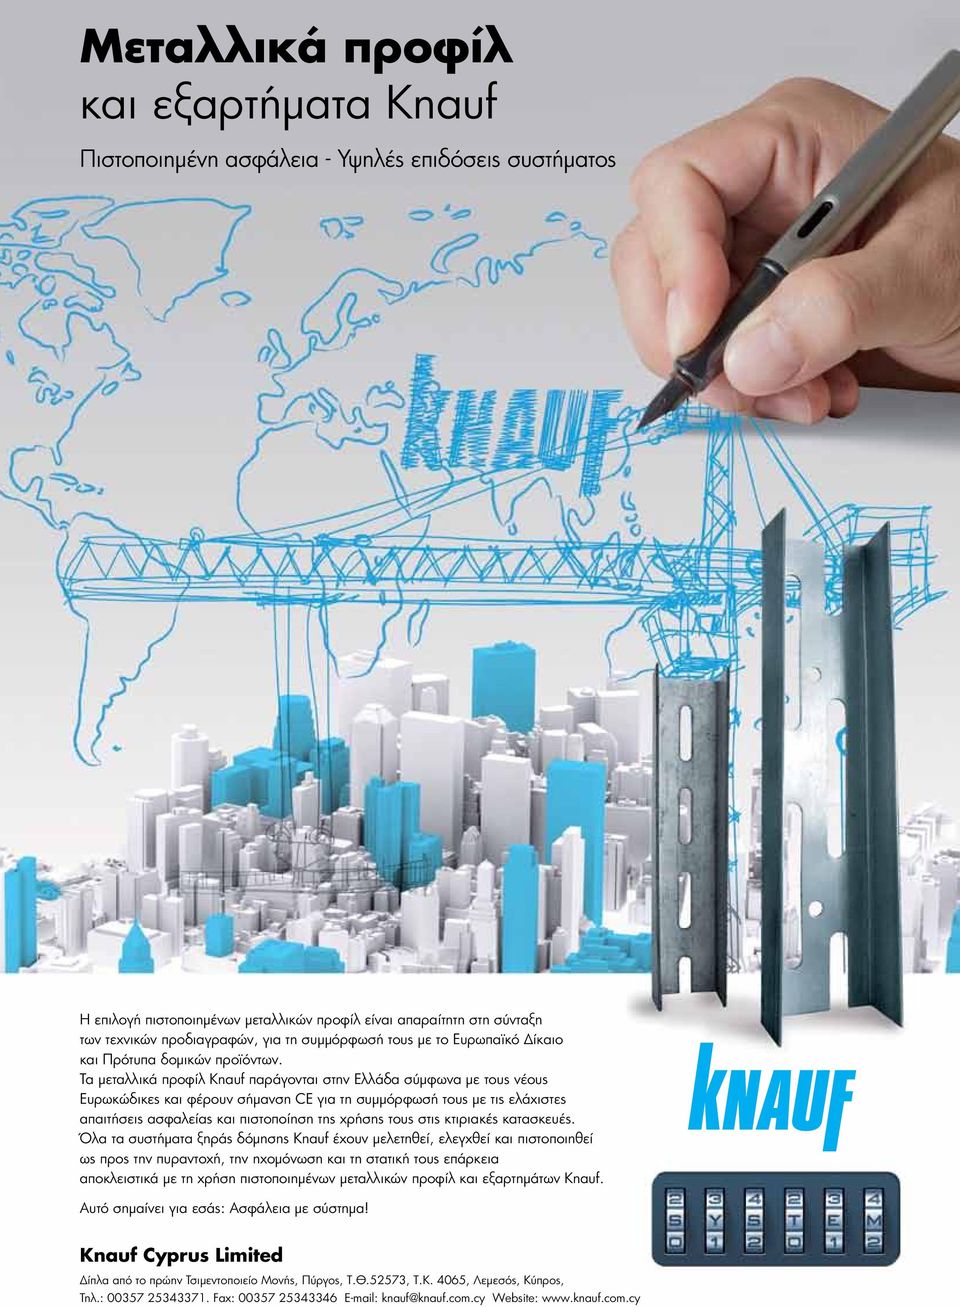 Τα μεταλλικά προφίλ Knauf παράγονται στην Ελλάδα σύμφωνα με τους νέους Ευρωκώδικες και φέρουν σήμανση CE για τη συμμόρφωσή τους με τις ελάχιστες απαιτήσεις ασφαλείας και πιστοποίηση της χρήσης τους